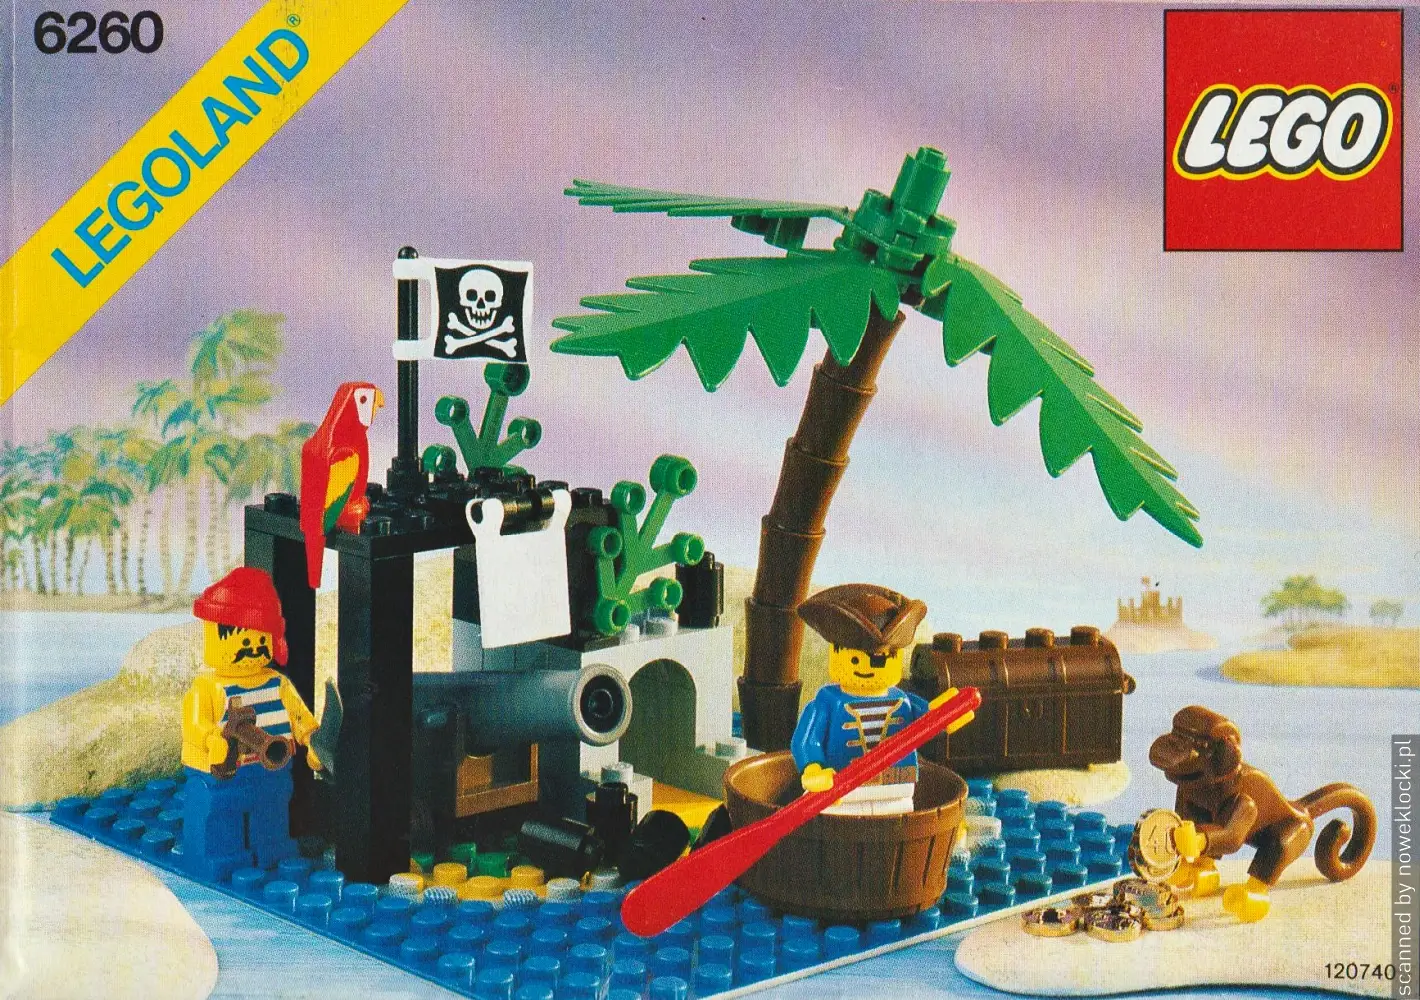 Zdjecie zestawu LEGO® nr 6260 – Wyspa wraków